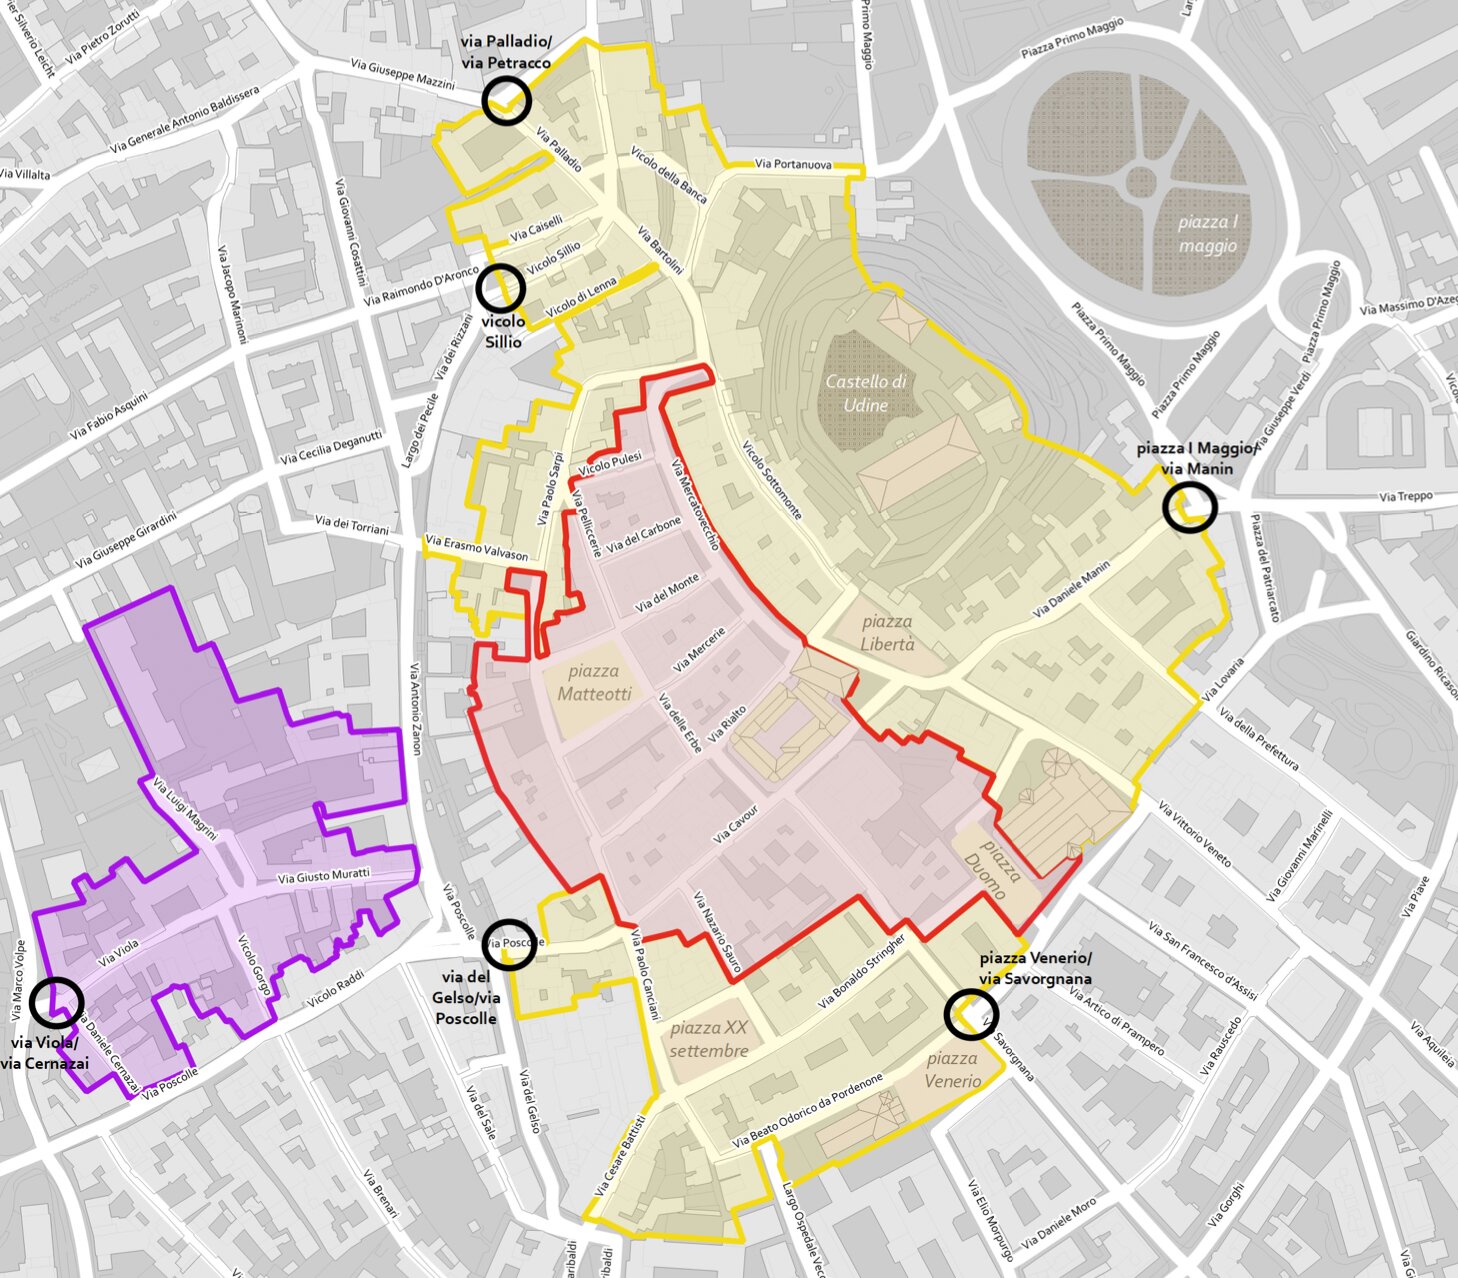 La riorganizzazione del centro storico di Udine con la creazione di due aree distinte una pedonale e una traffico limitato